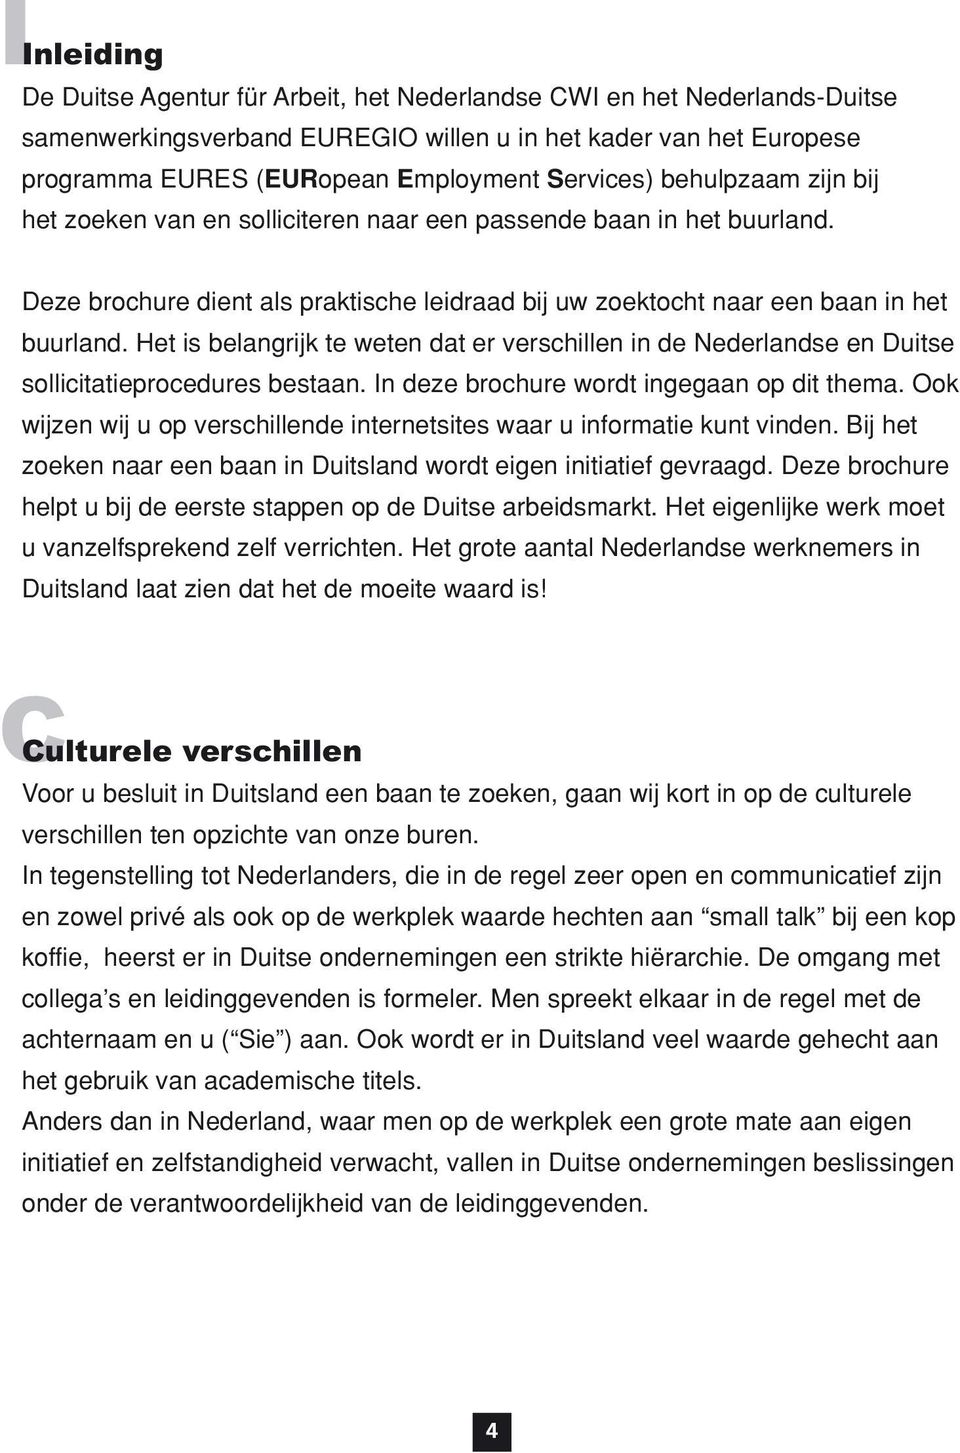 Het is belangrijk te weten dat er verschillen in de Nederlandse en Duitse sollicitatieprocedures bestaan. In deze brochure wordt ingegaan op dit thema.